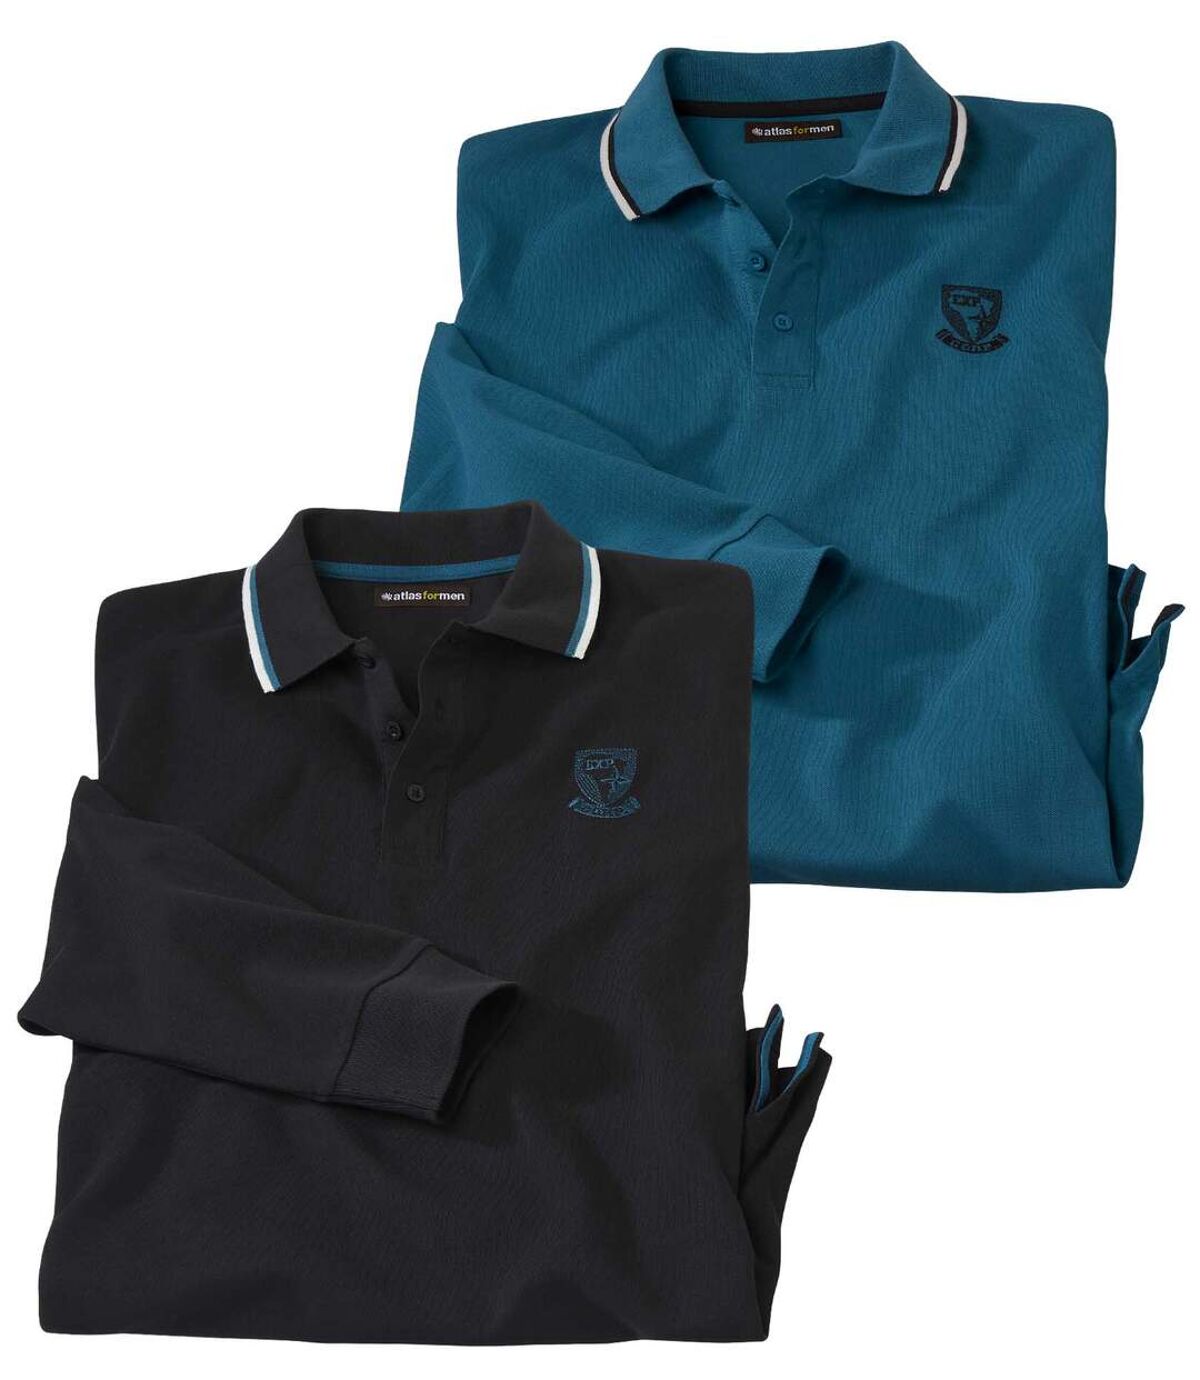 Pack of 2 Men's Long Sleeve Polo Shirts - Black Blue Atlas For Men